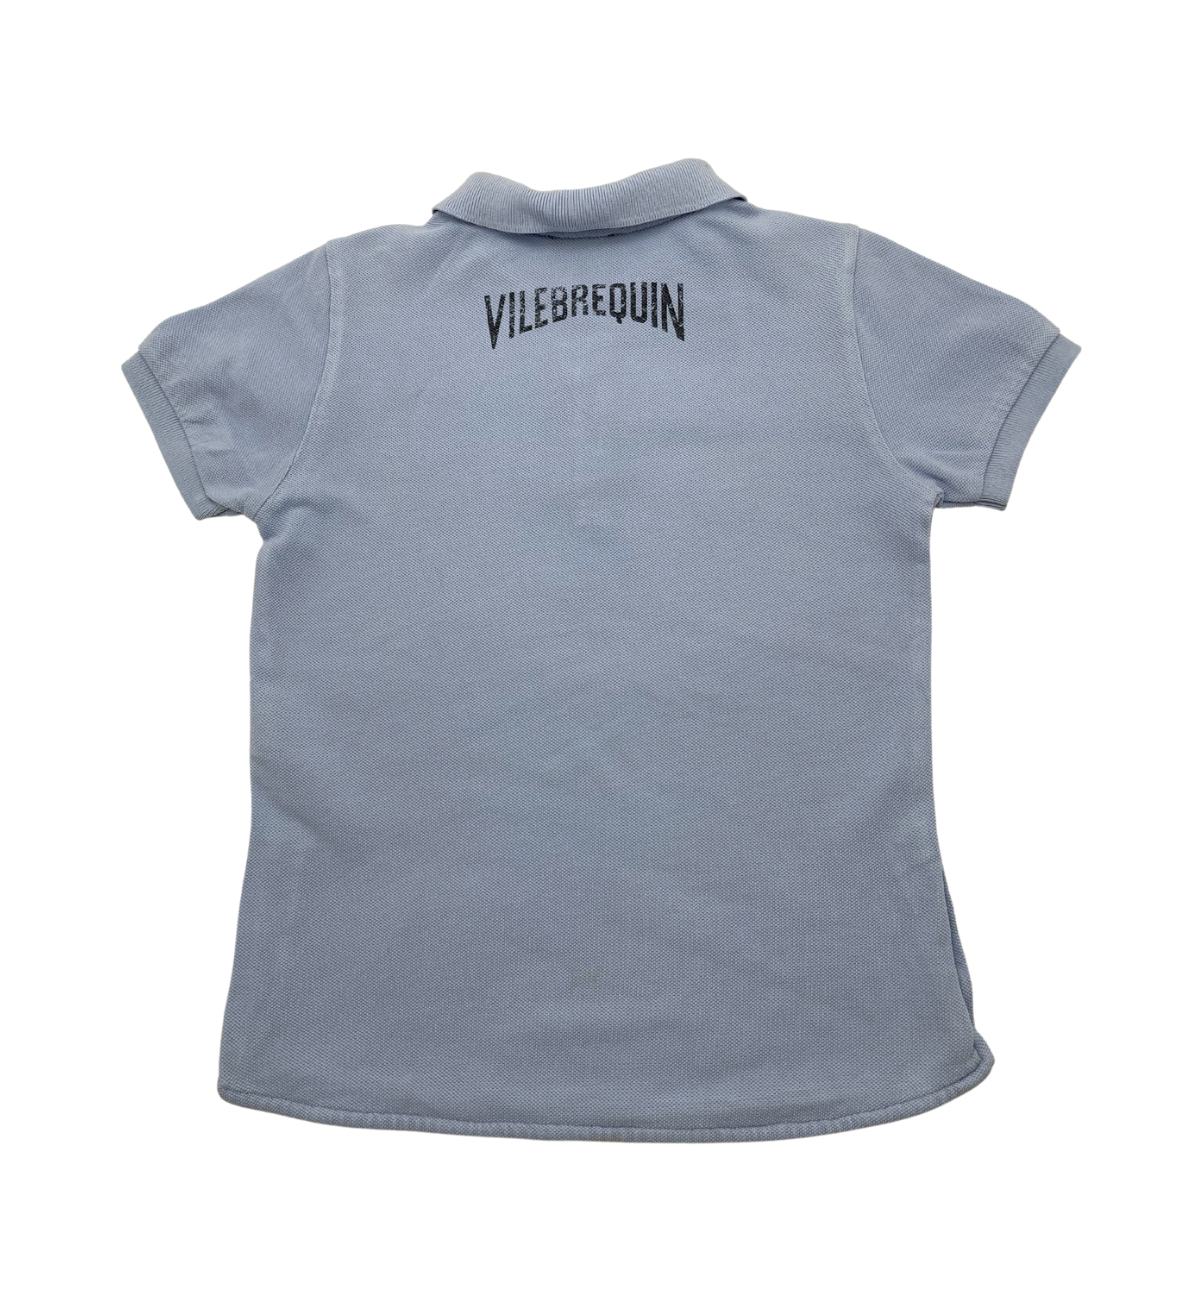 VILEBREQUIN - Polo bleu ciel tortue - 6 ans